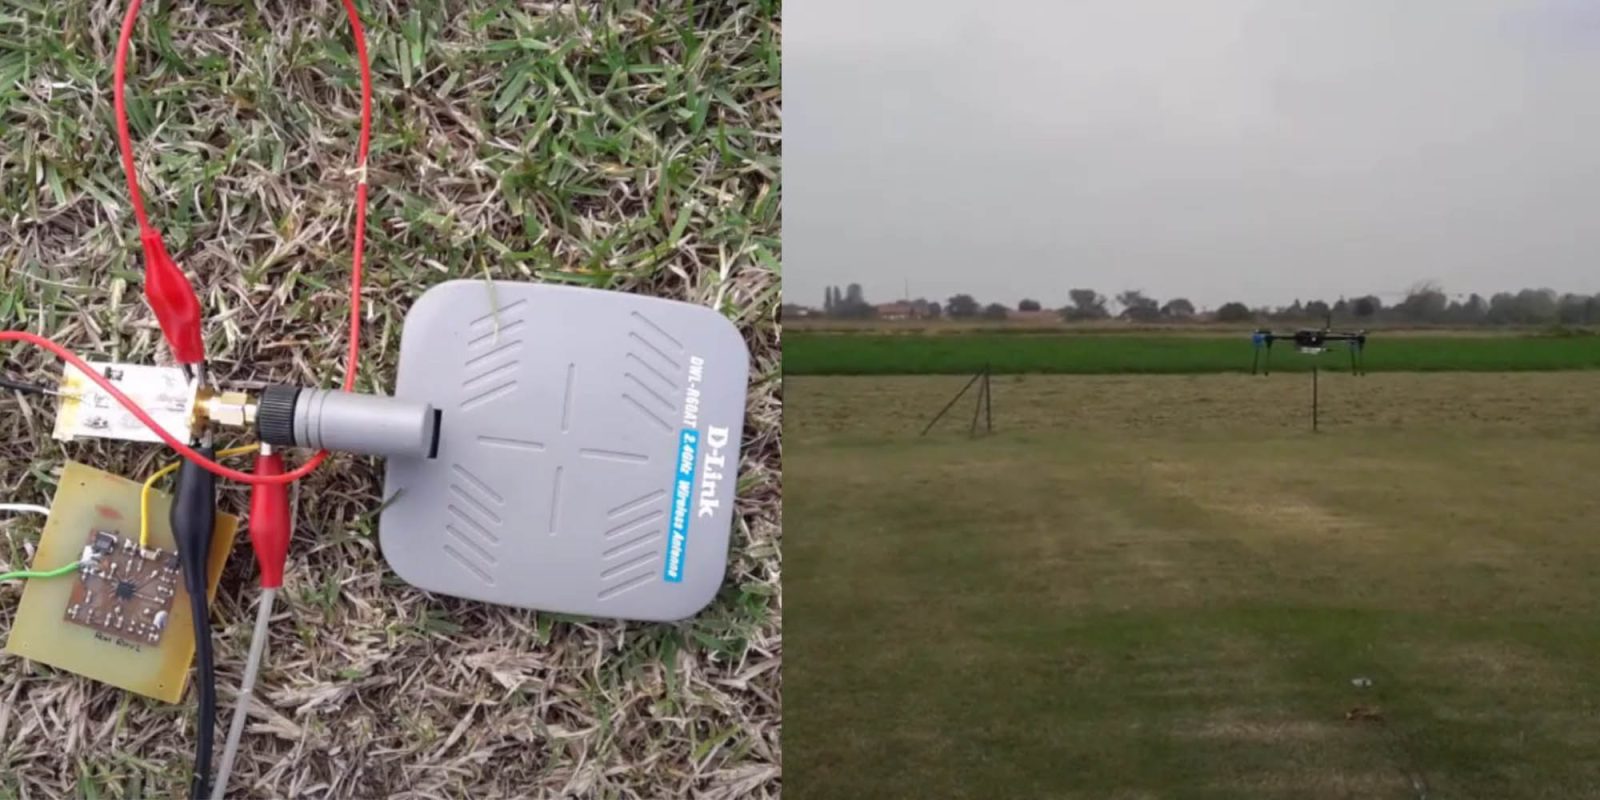 drone charge wake sensors radio waves